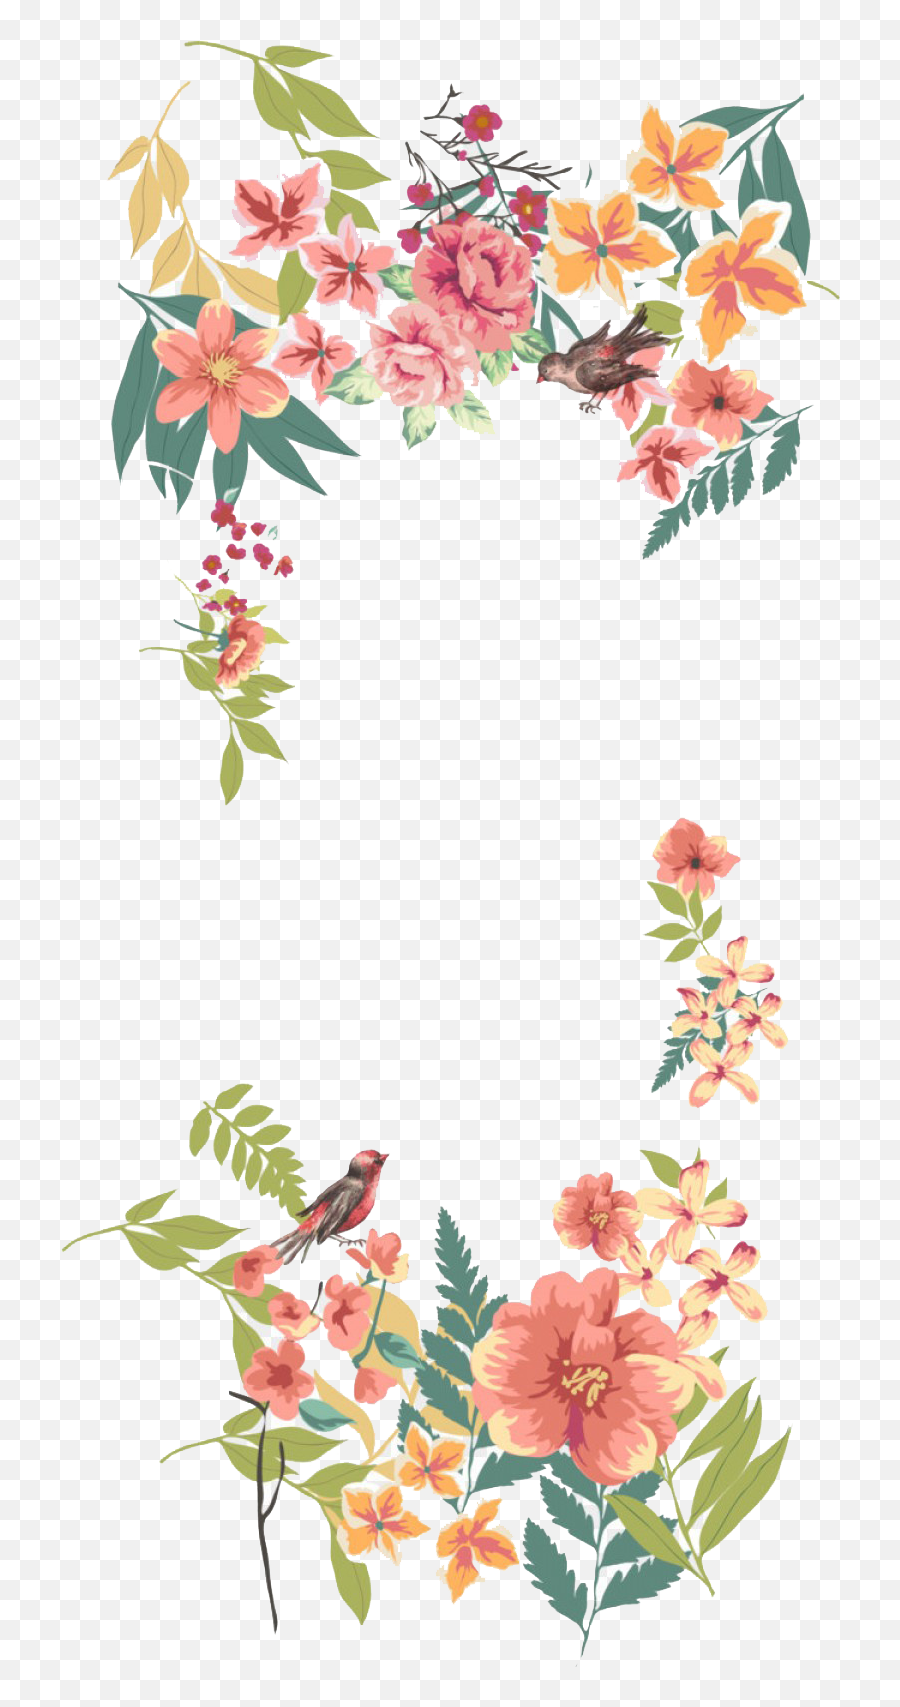 Free Floral Png Emoji,Flower Border Transparent Background